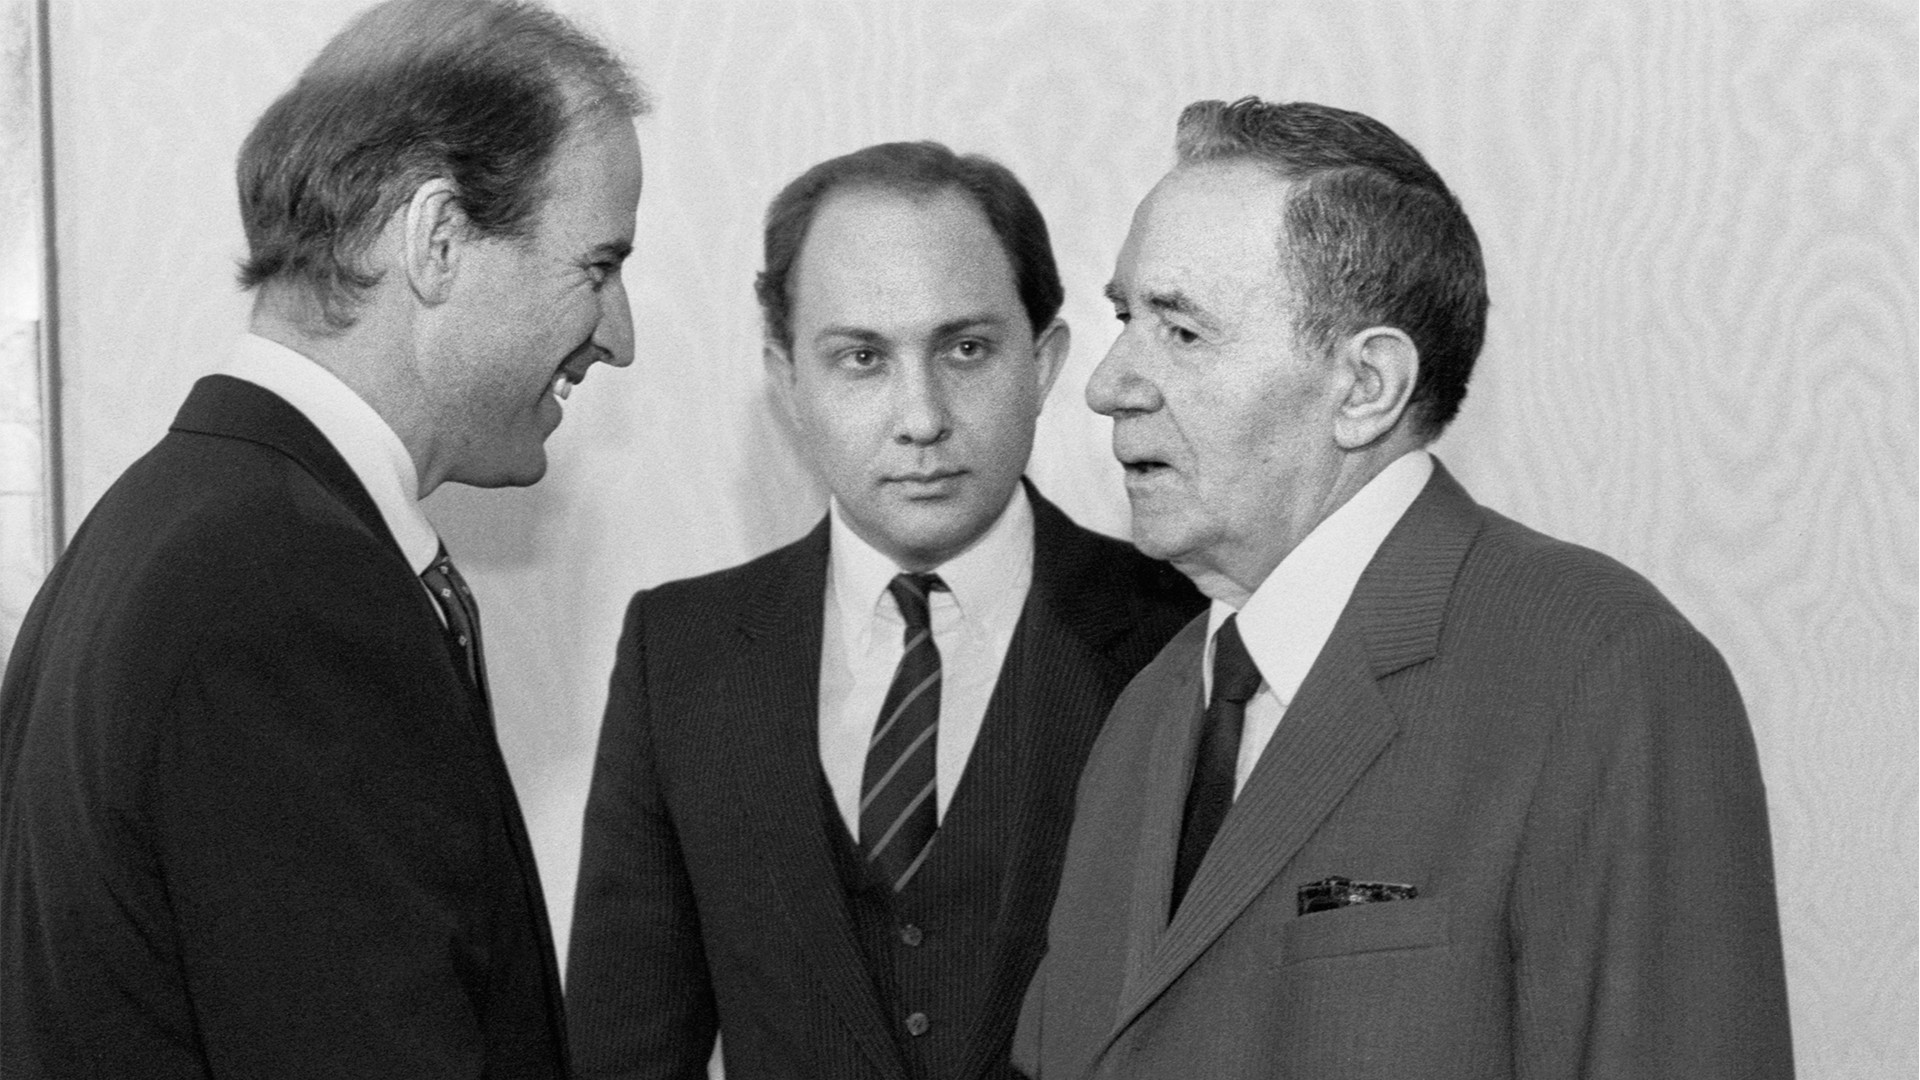 Joseph Biden, Victor Prokofiev, and Andrei Gromyko in 1988.